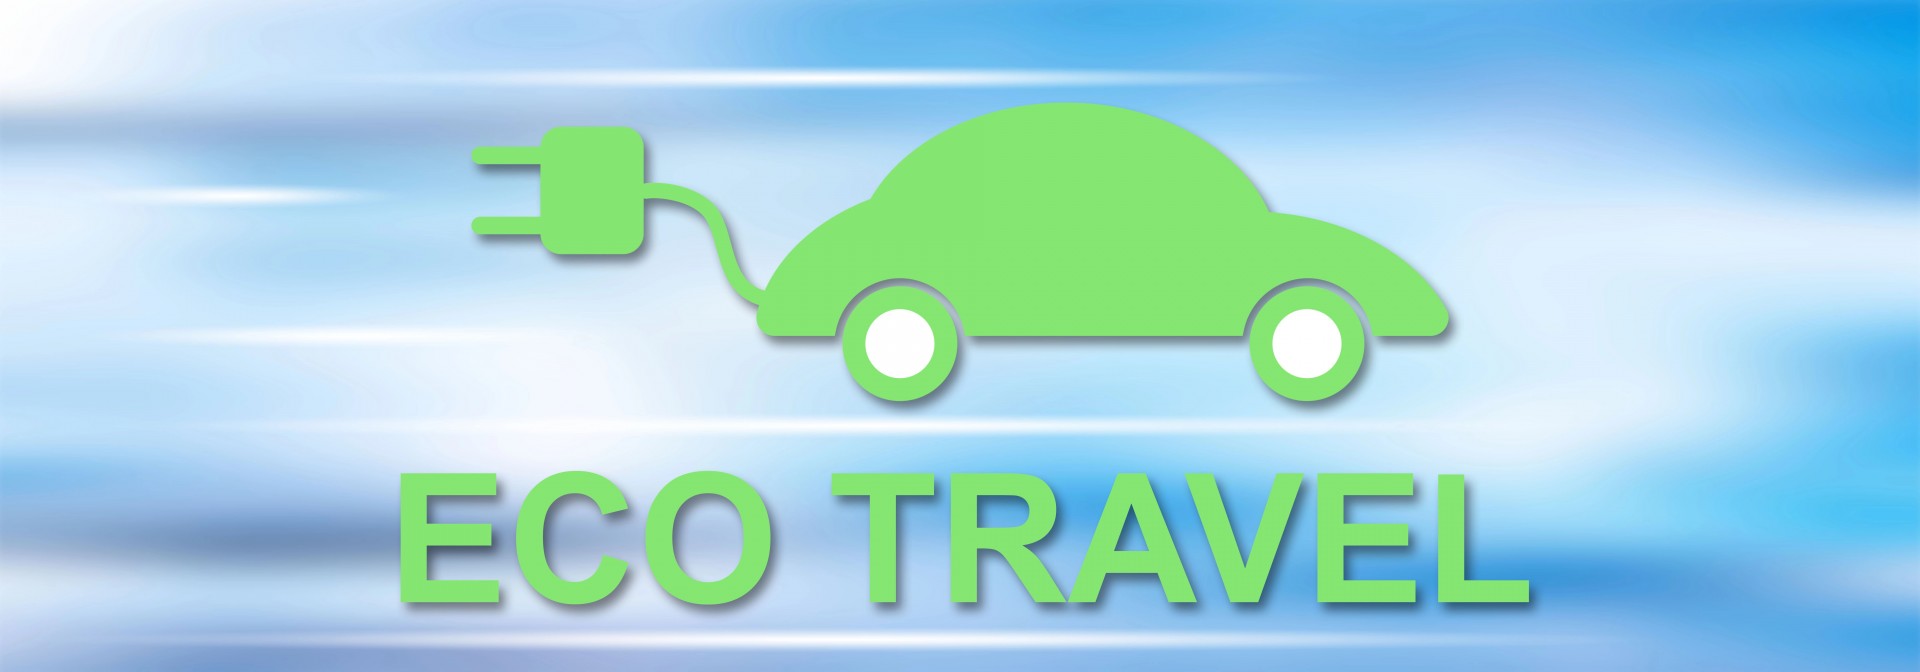 Ecobonus: dal 17 giugno al via incentivi per taxi e NCC